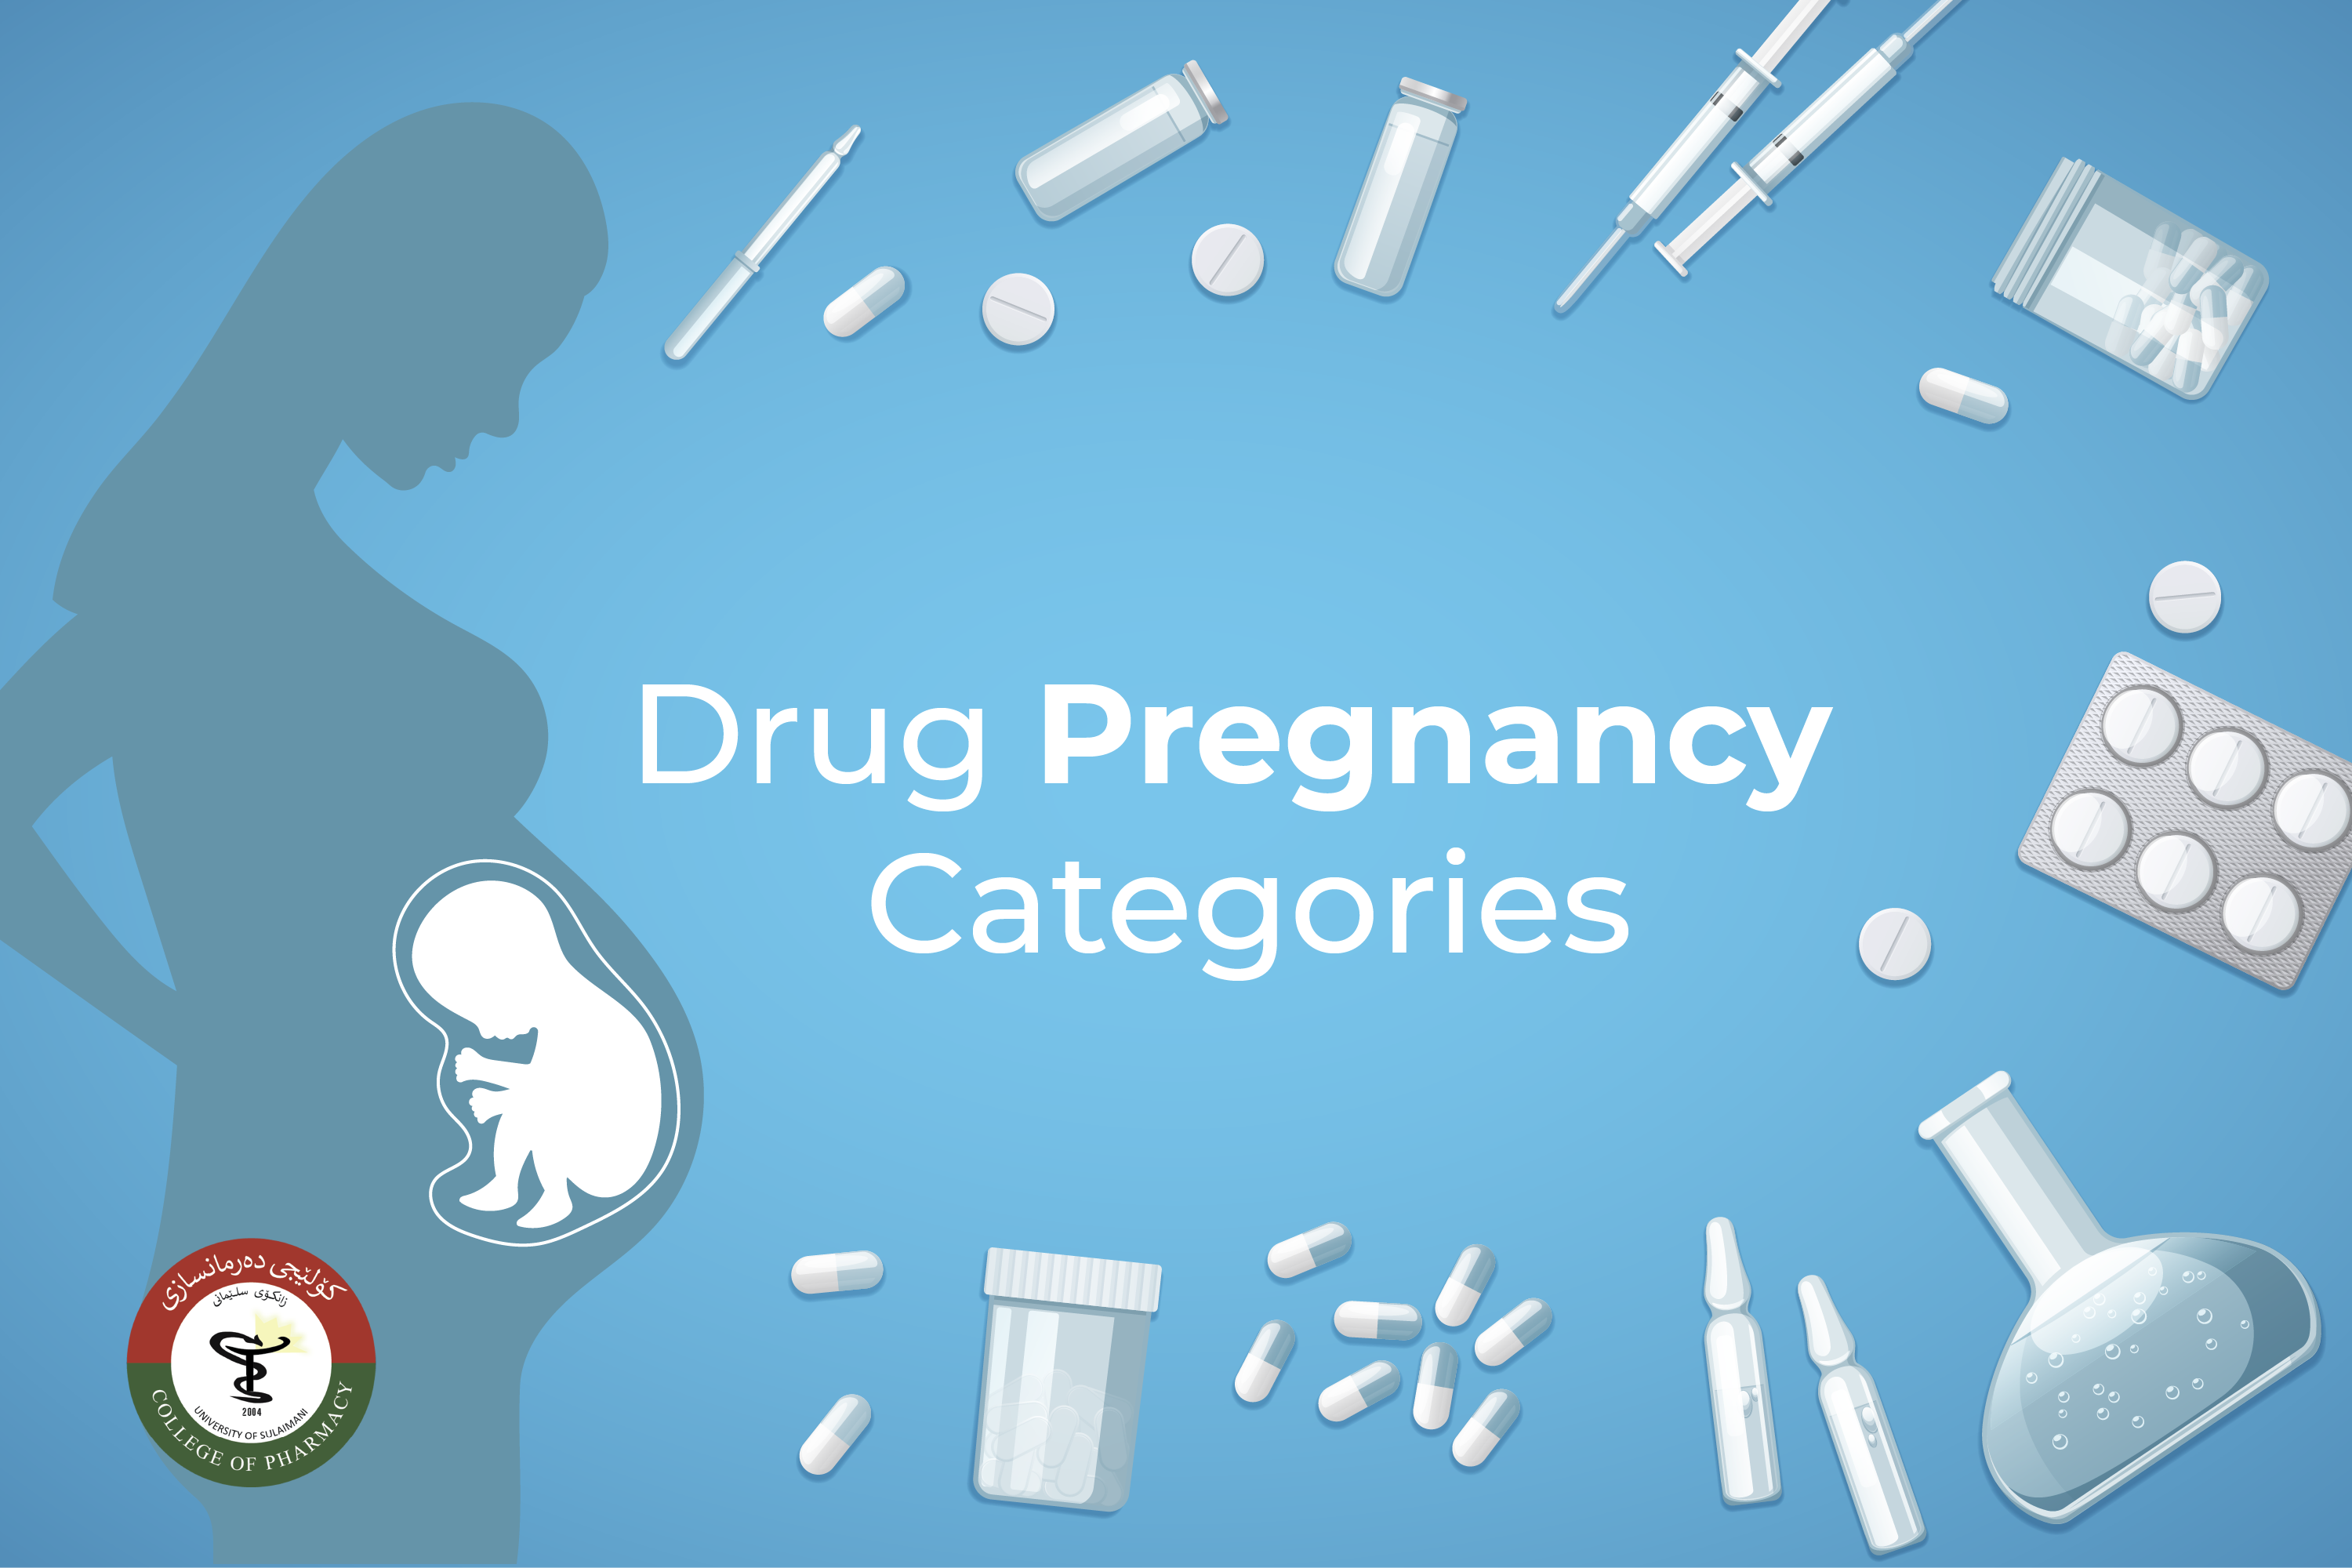 Drug Pregnancy Categoris